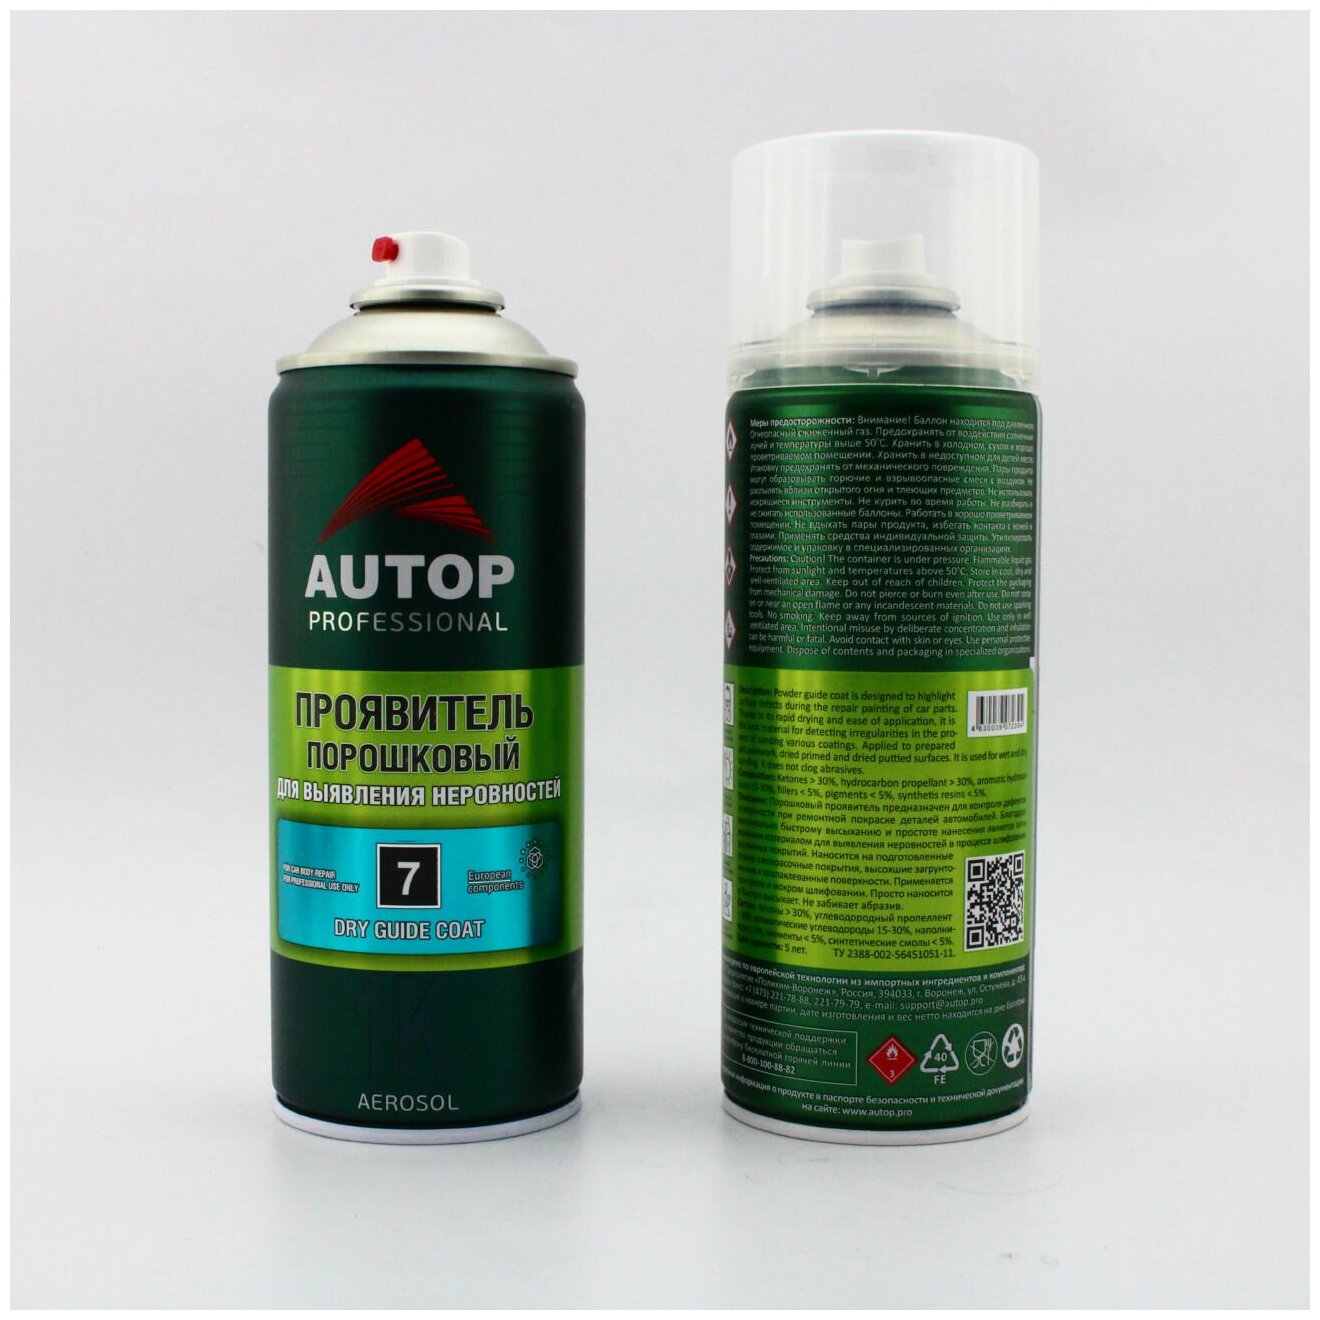 AP007 Проявитель порошковый "Autop" №7 1К Dry Guide Coat Мs Spray Clear аэрозольный 650 мл